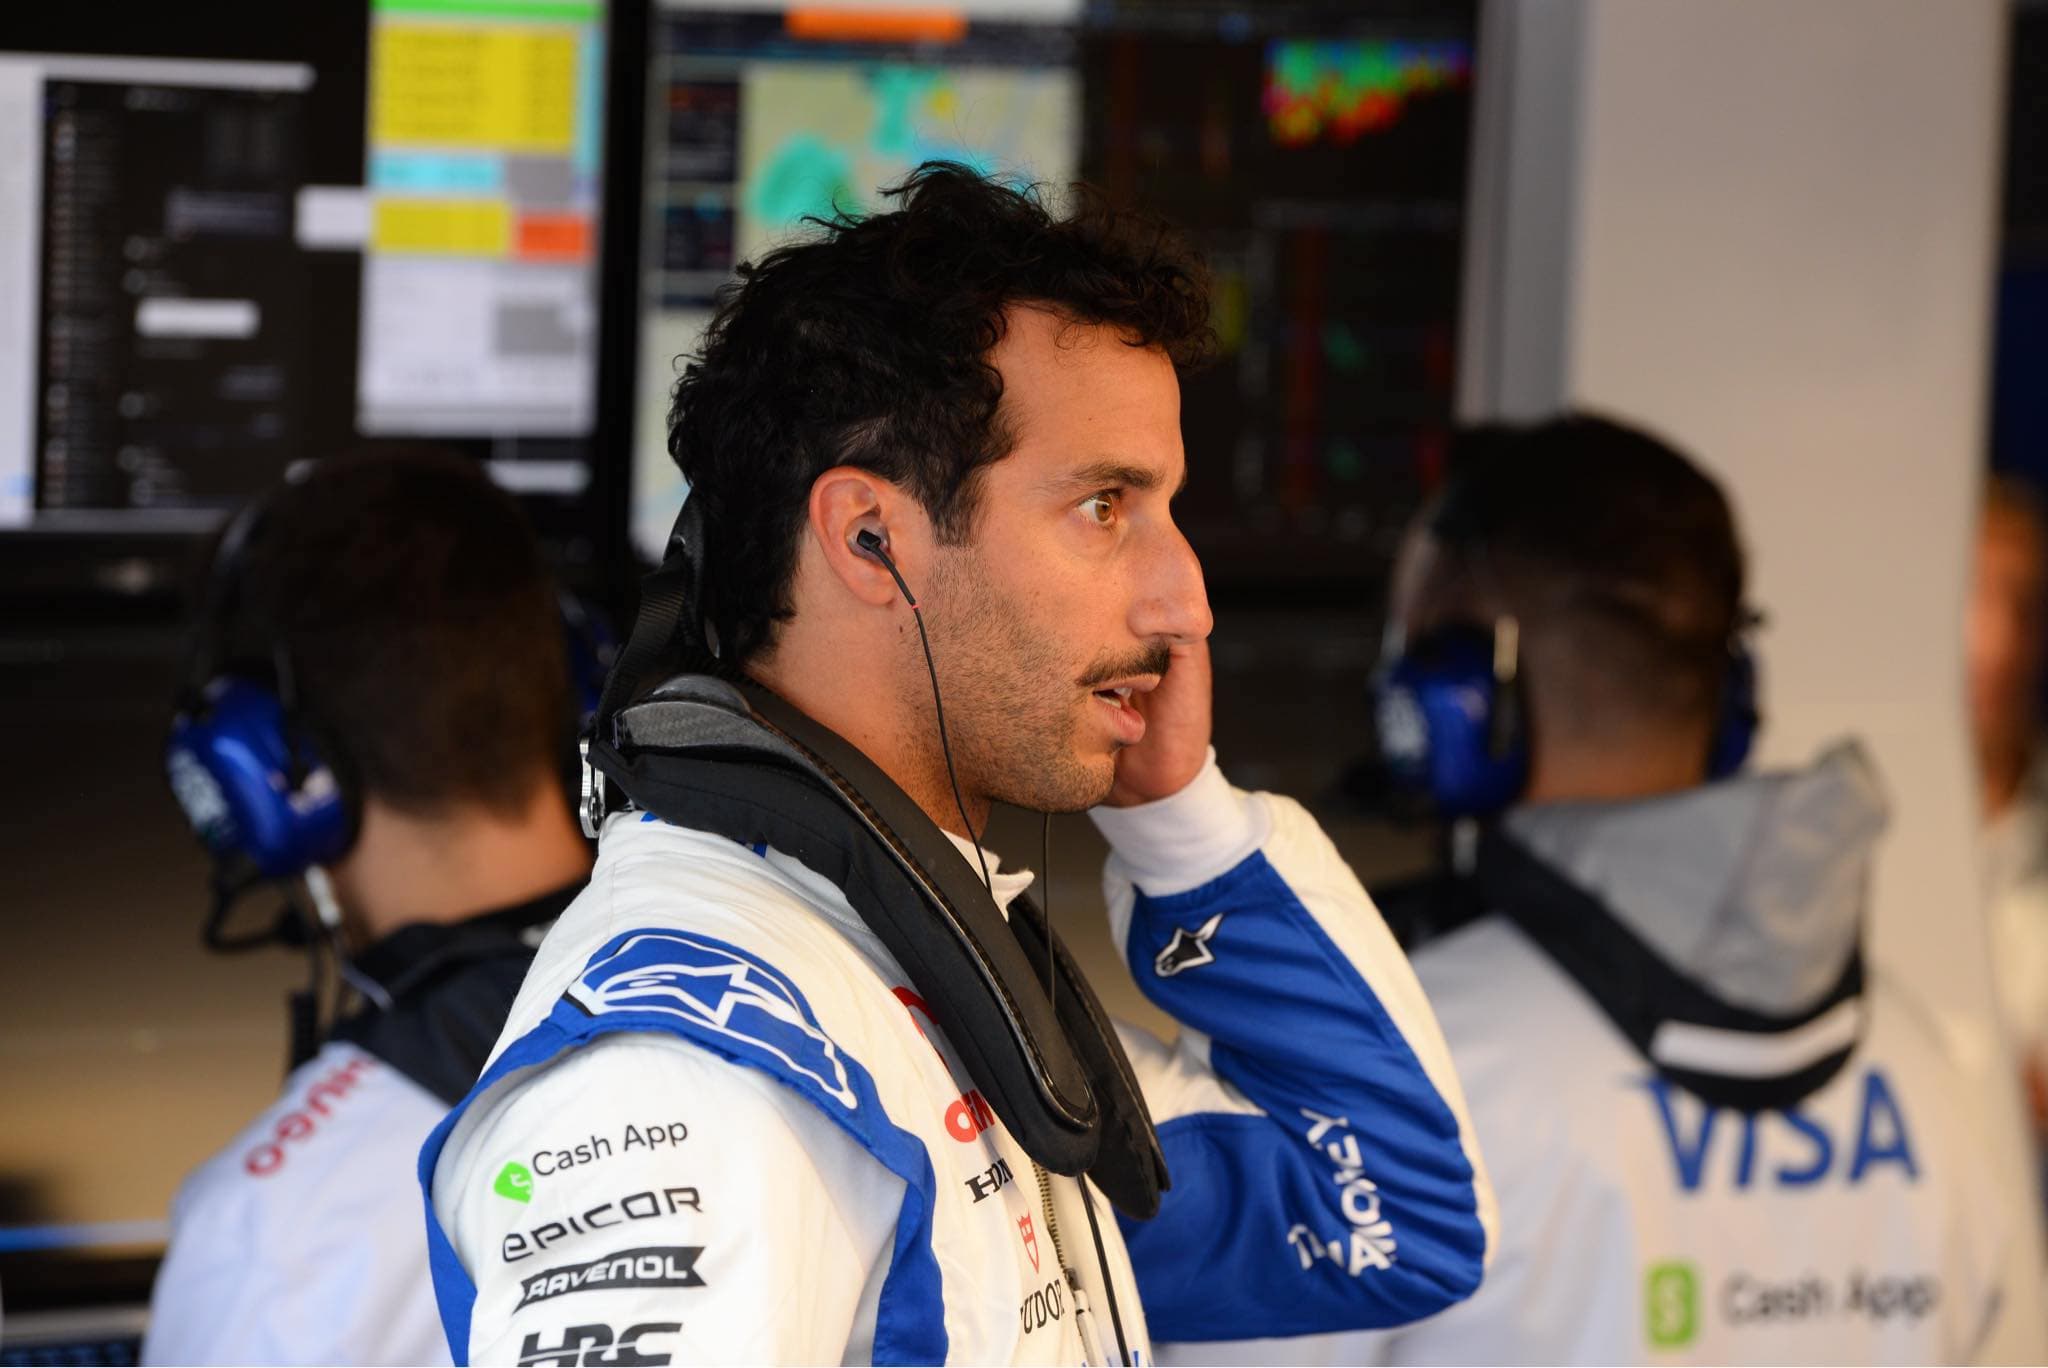 Plotki: Ricciardo może wylecieć ze swojego zespołu nawet przed wakacjami